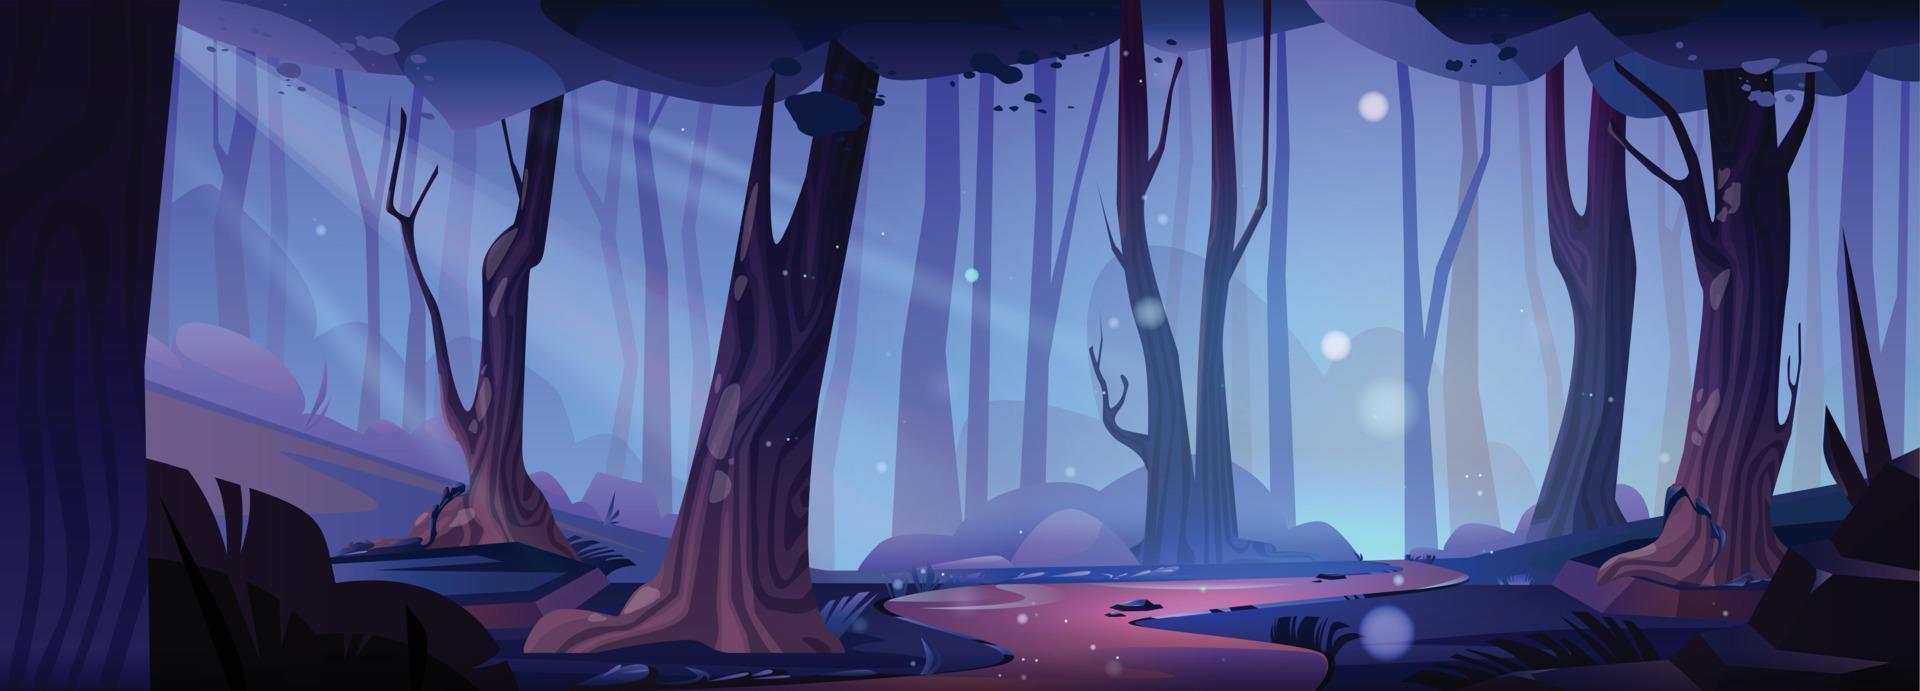 camino en bosque a noche dibujos animados vector paisaje